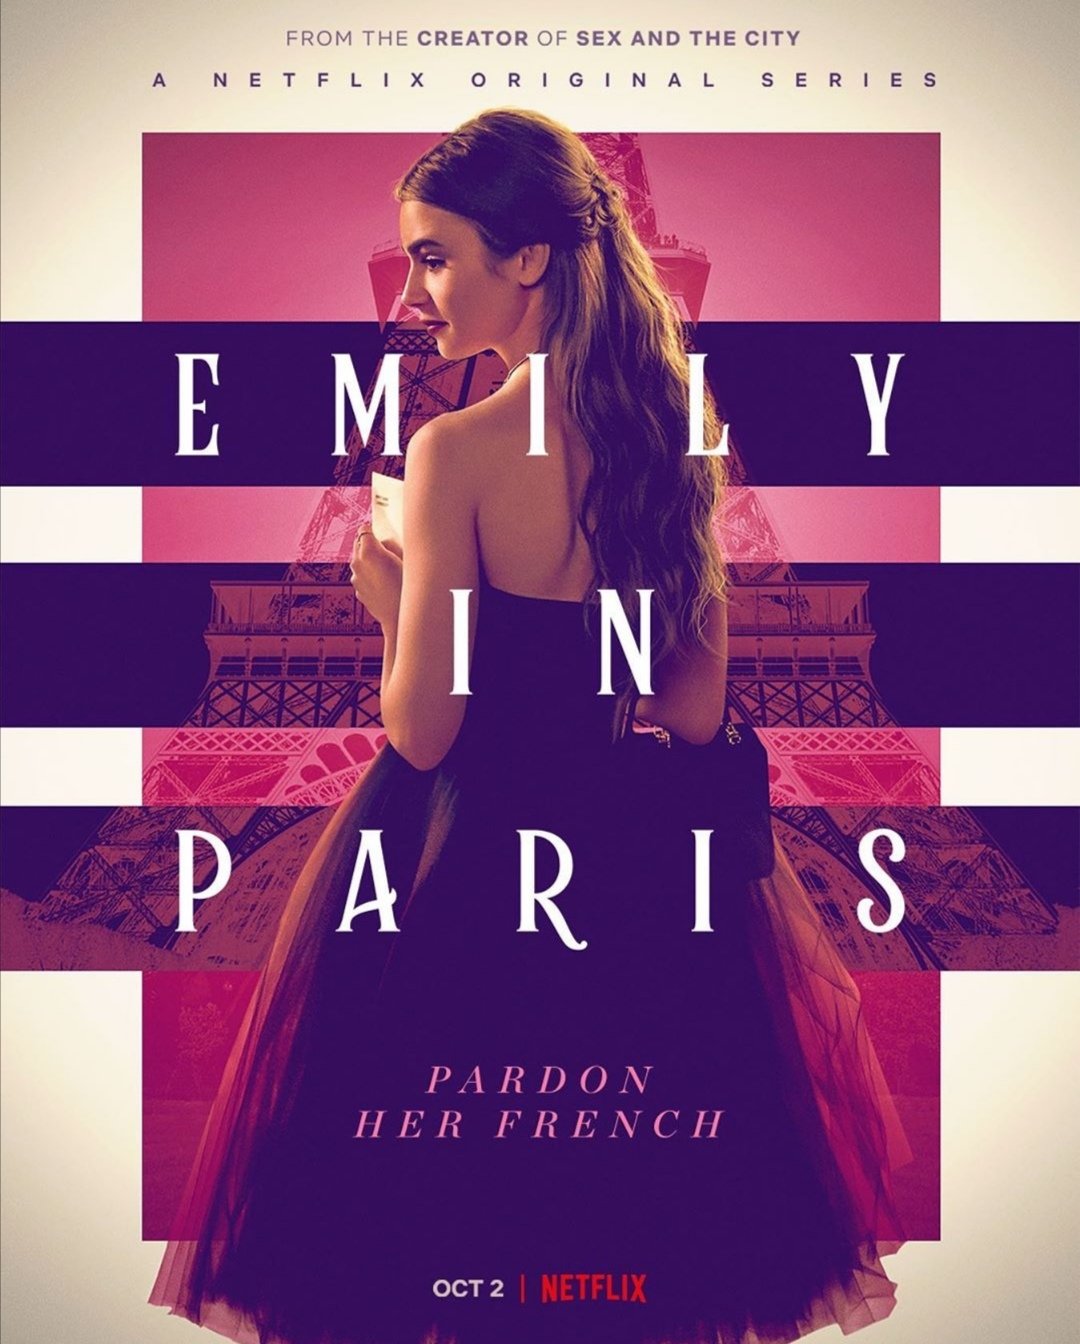 Netflix revela el tráiler y el póster oficial de “Emily in Paris”